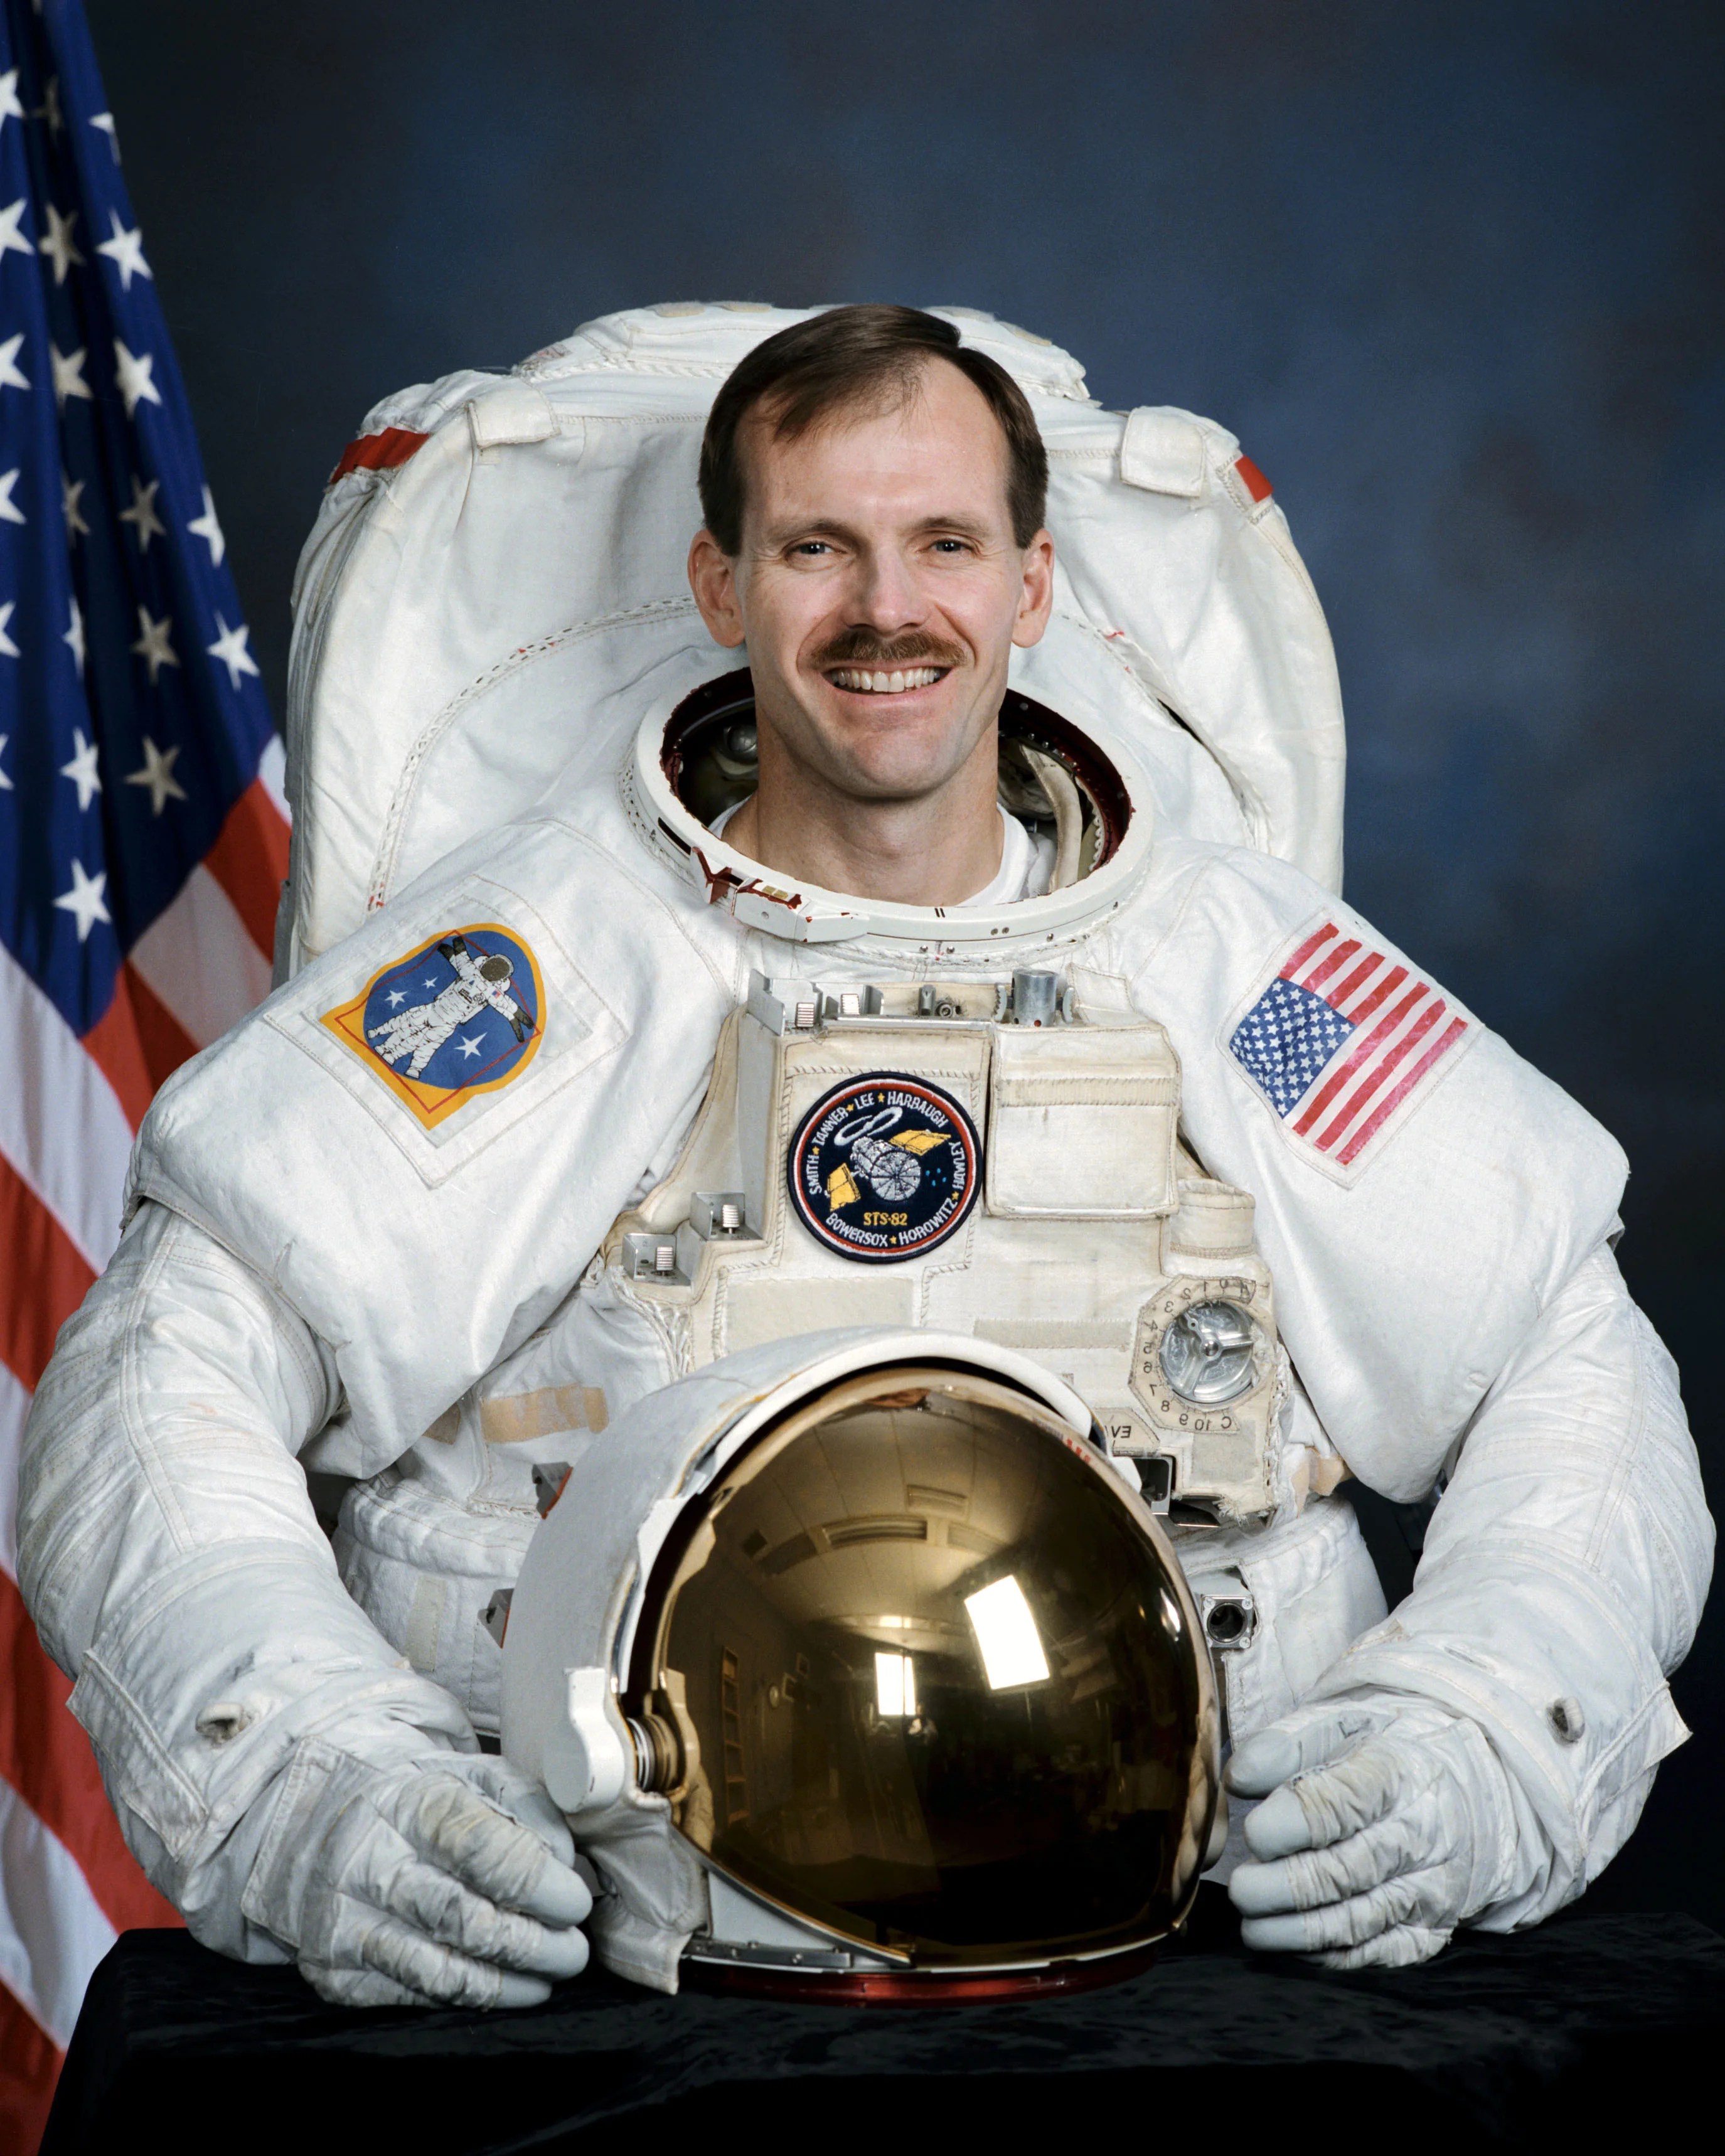 Official astronaut portrait of Steven Smith.